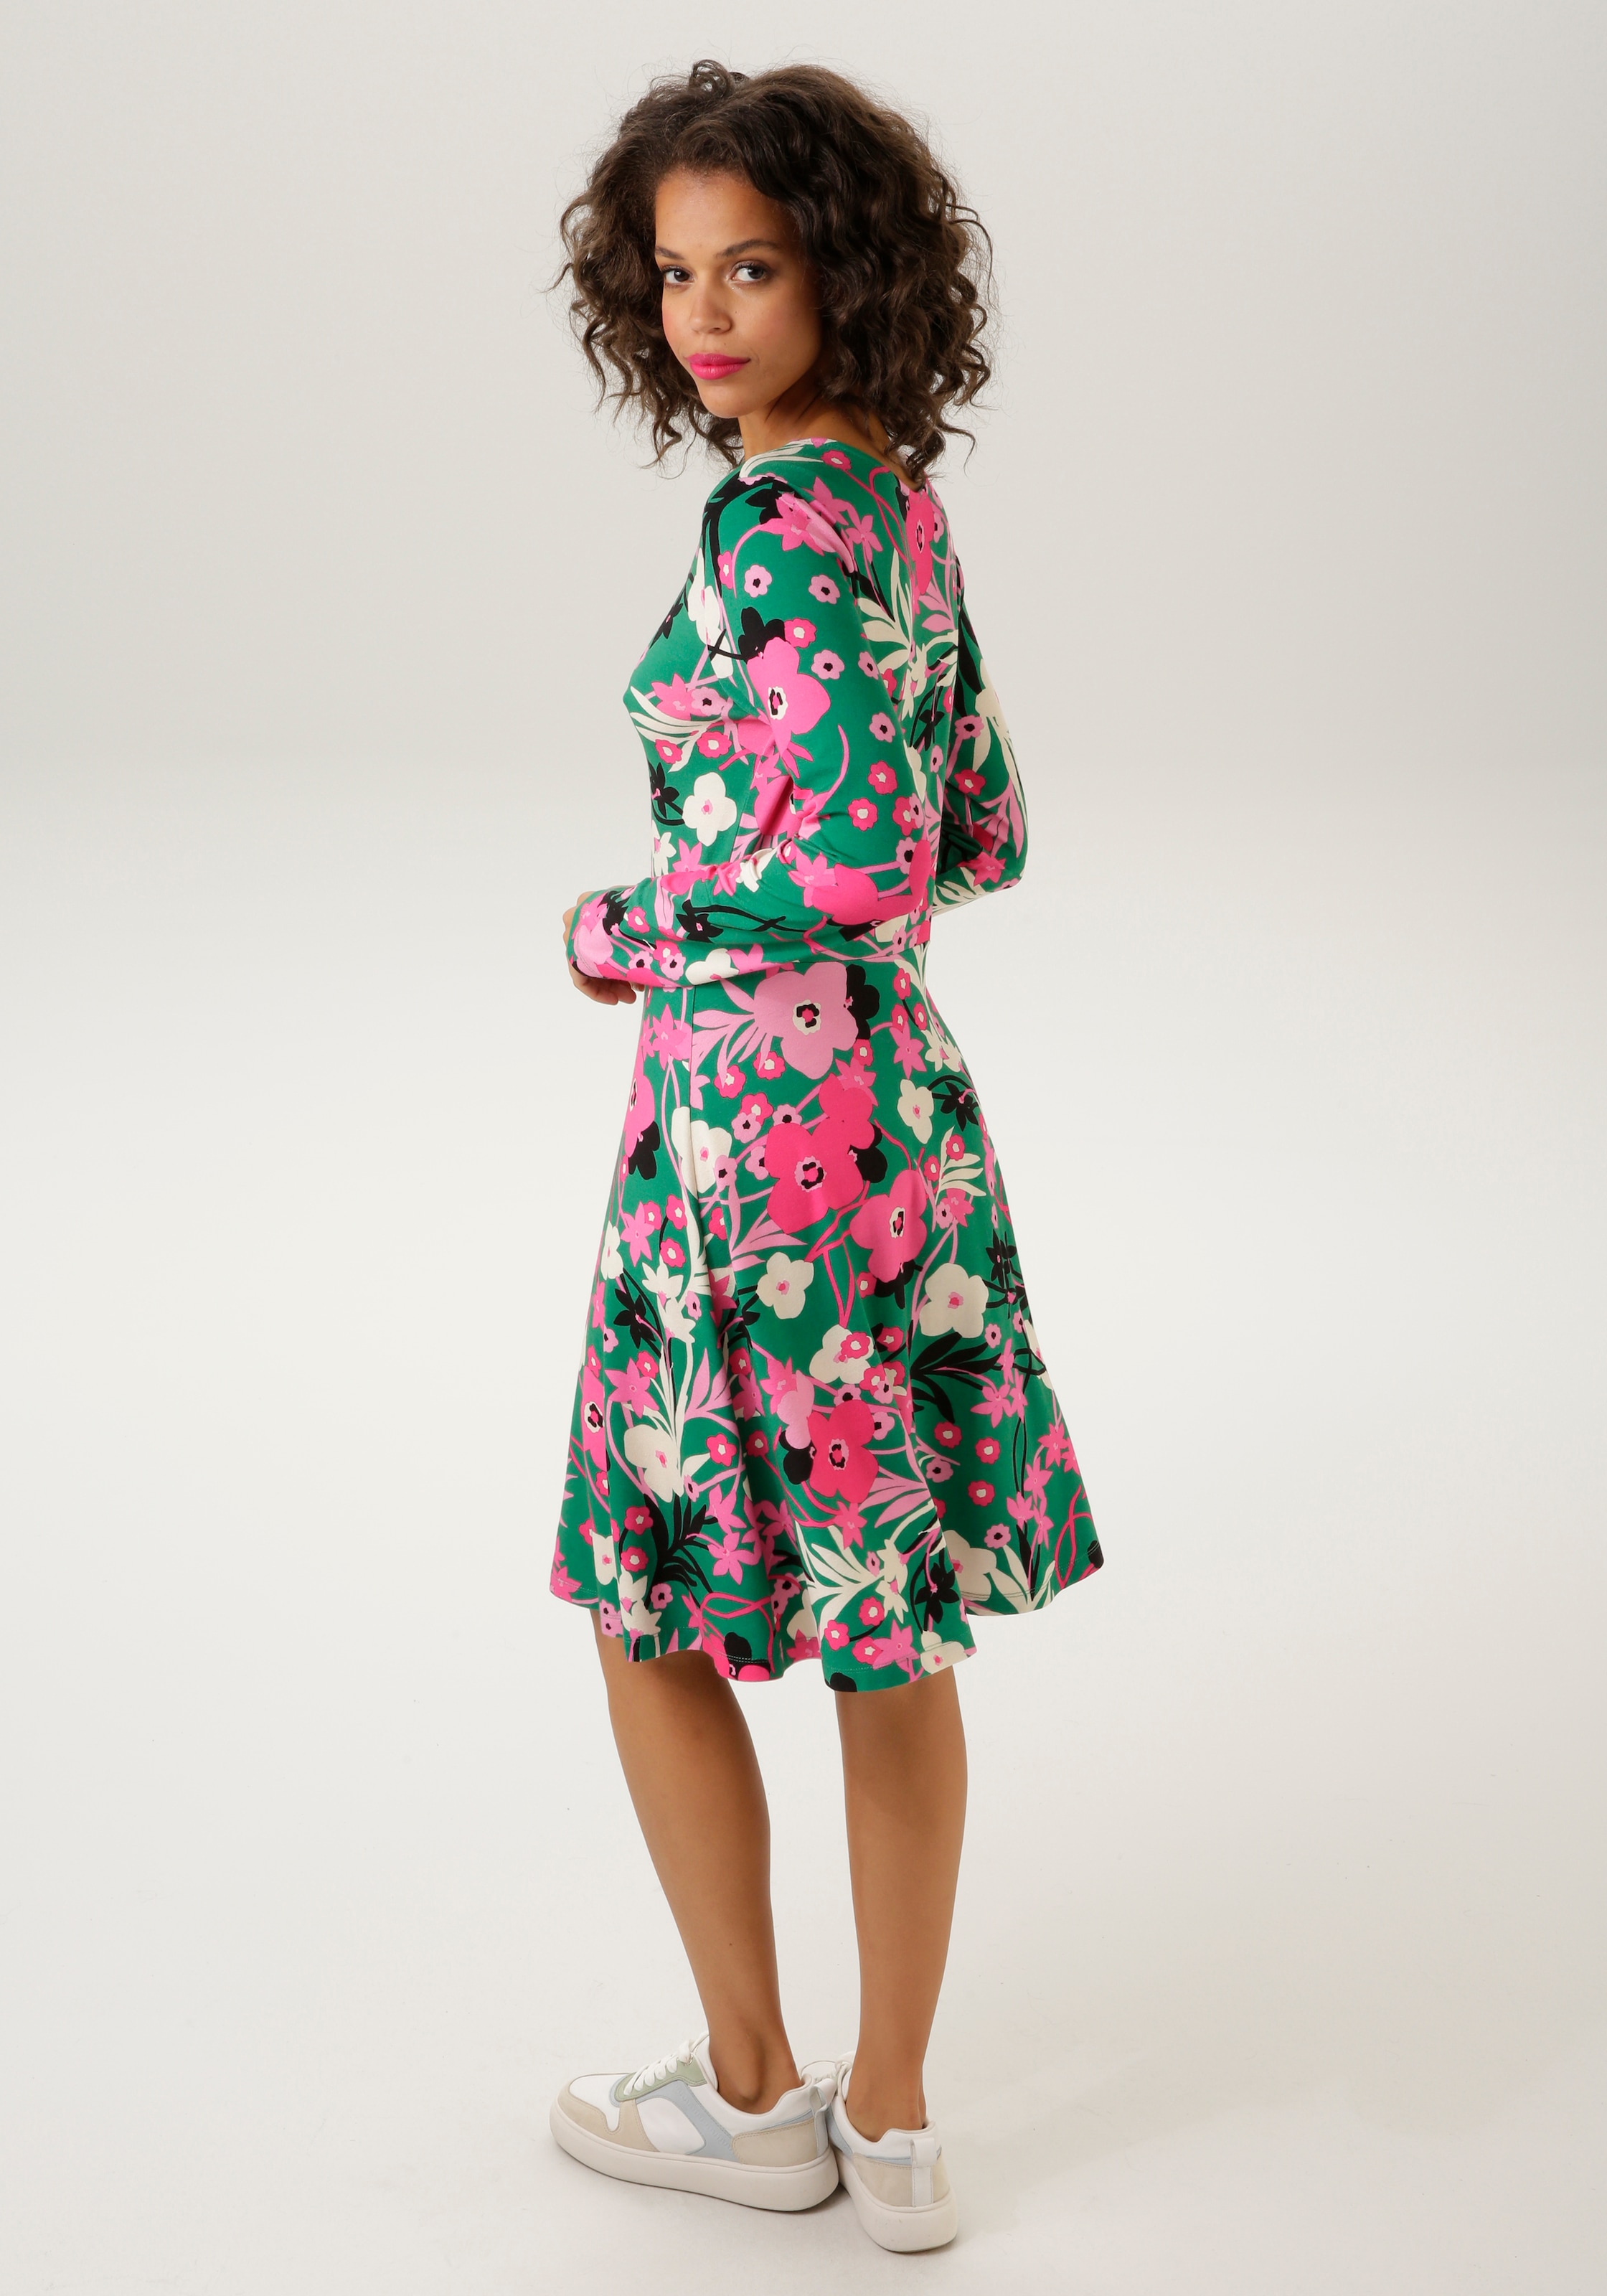 sur ein Jerseykleid, Unikat frais -jedes mit de - Teil Aniston KOLLEKTION CASUAL NEUE trendfarbigen sans Blumendruck livraison